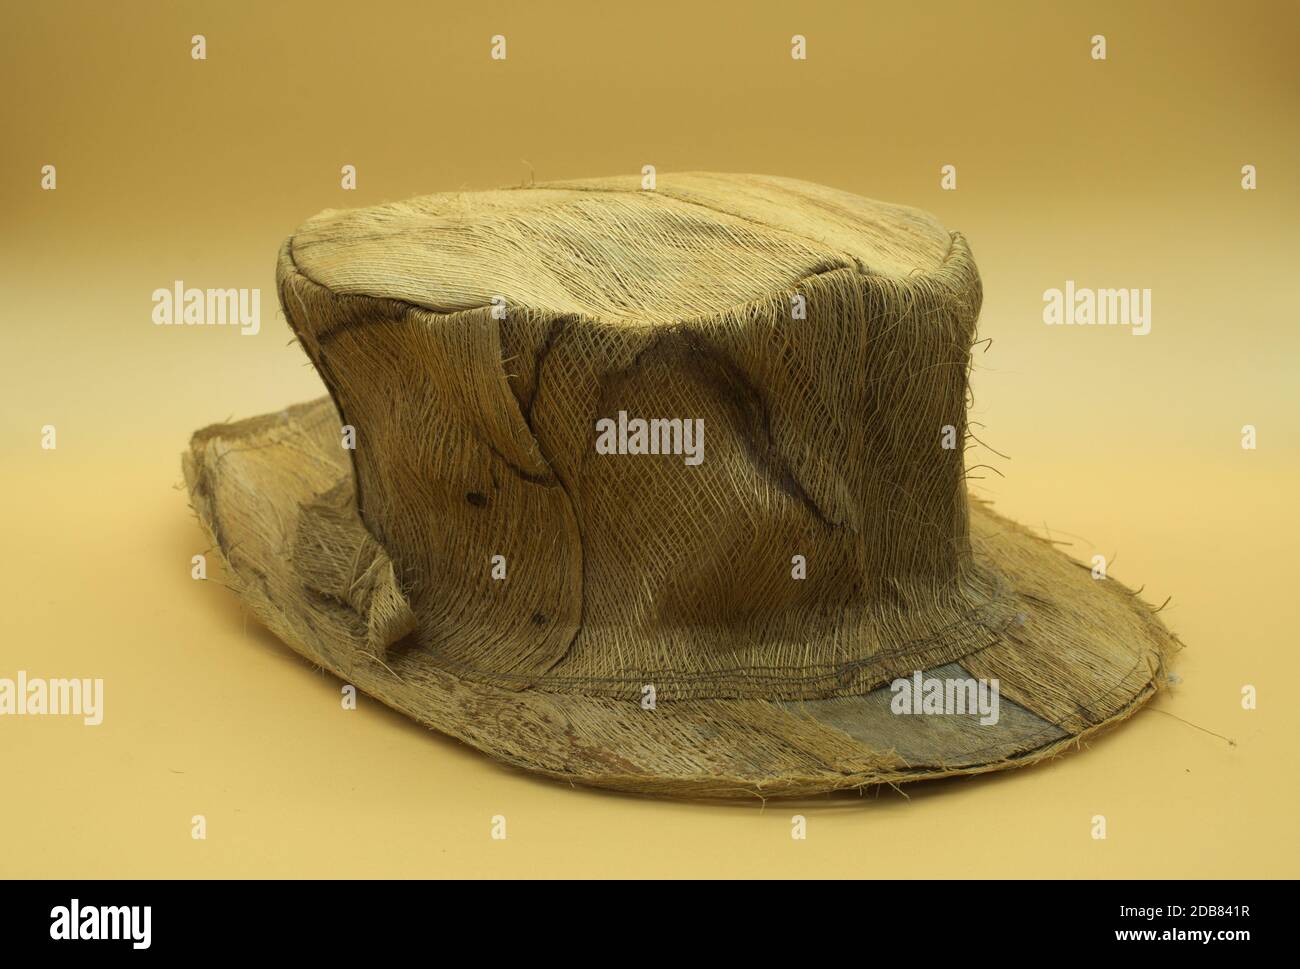 Handmade palm leaf hat isolated on neutral orange background Stock Photo